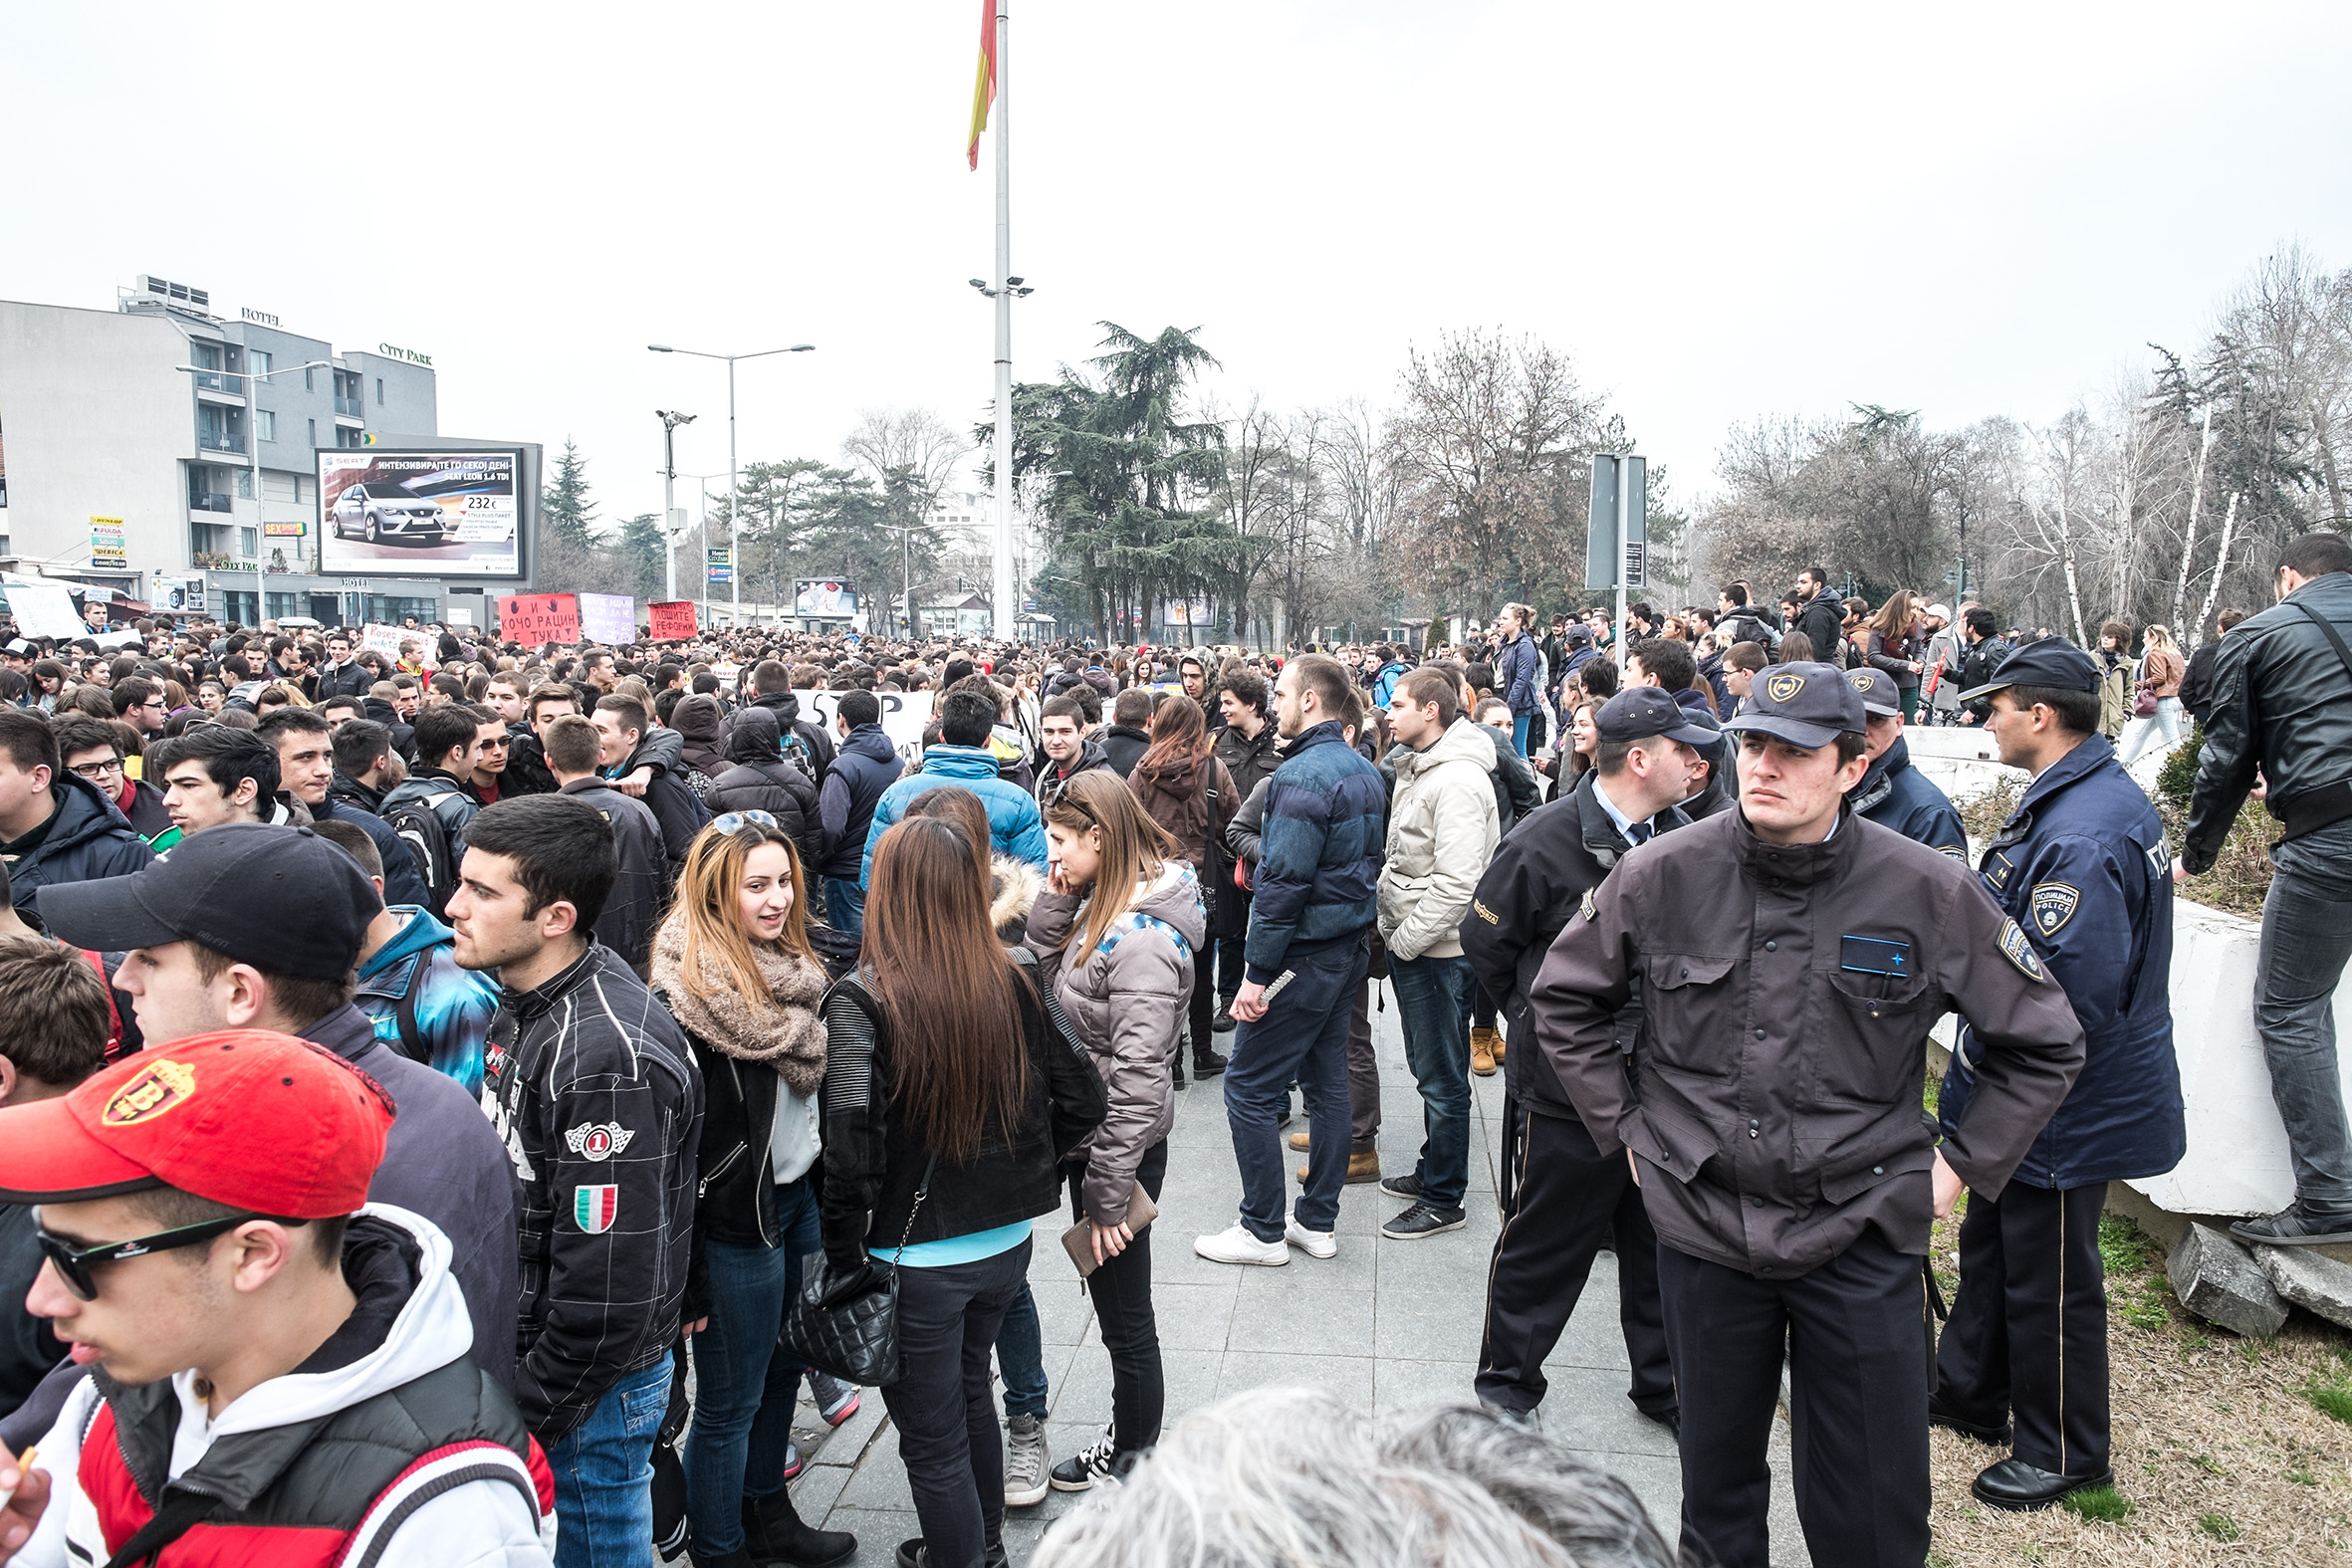 Сотни старшеклассников собрались для протеста в Скопье 21 марта 2015 года, а в совокупности тысячи собрались в других городах по всей стране.